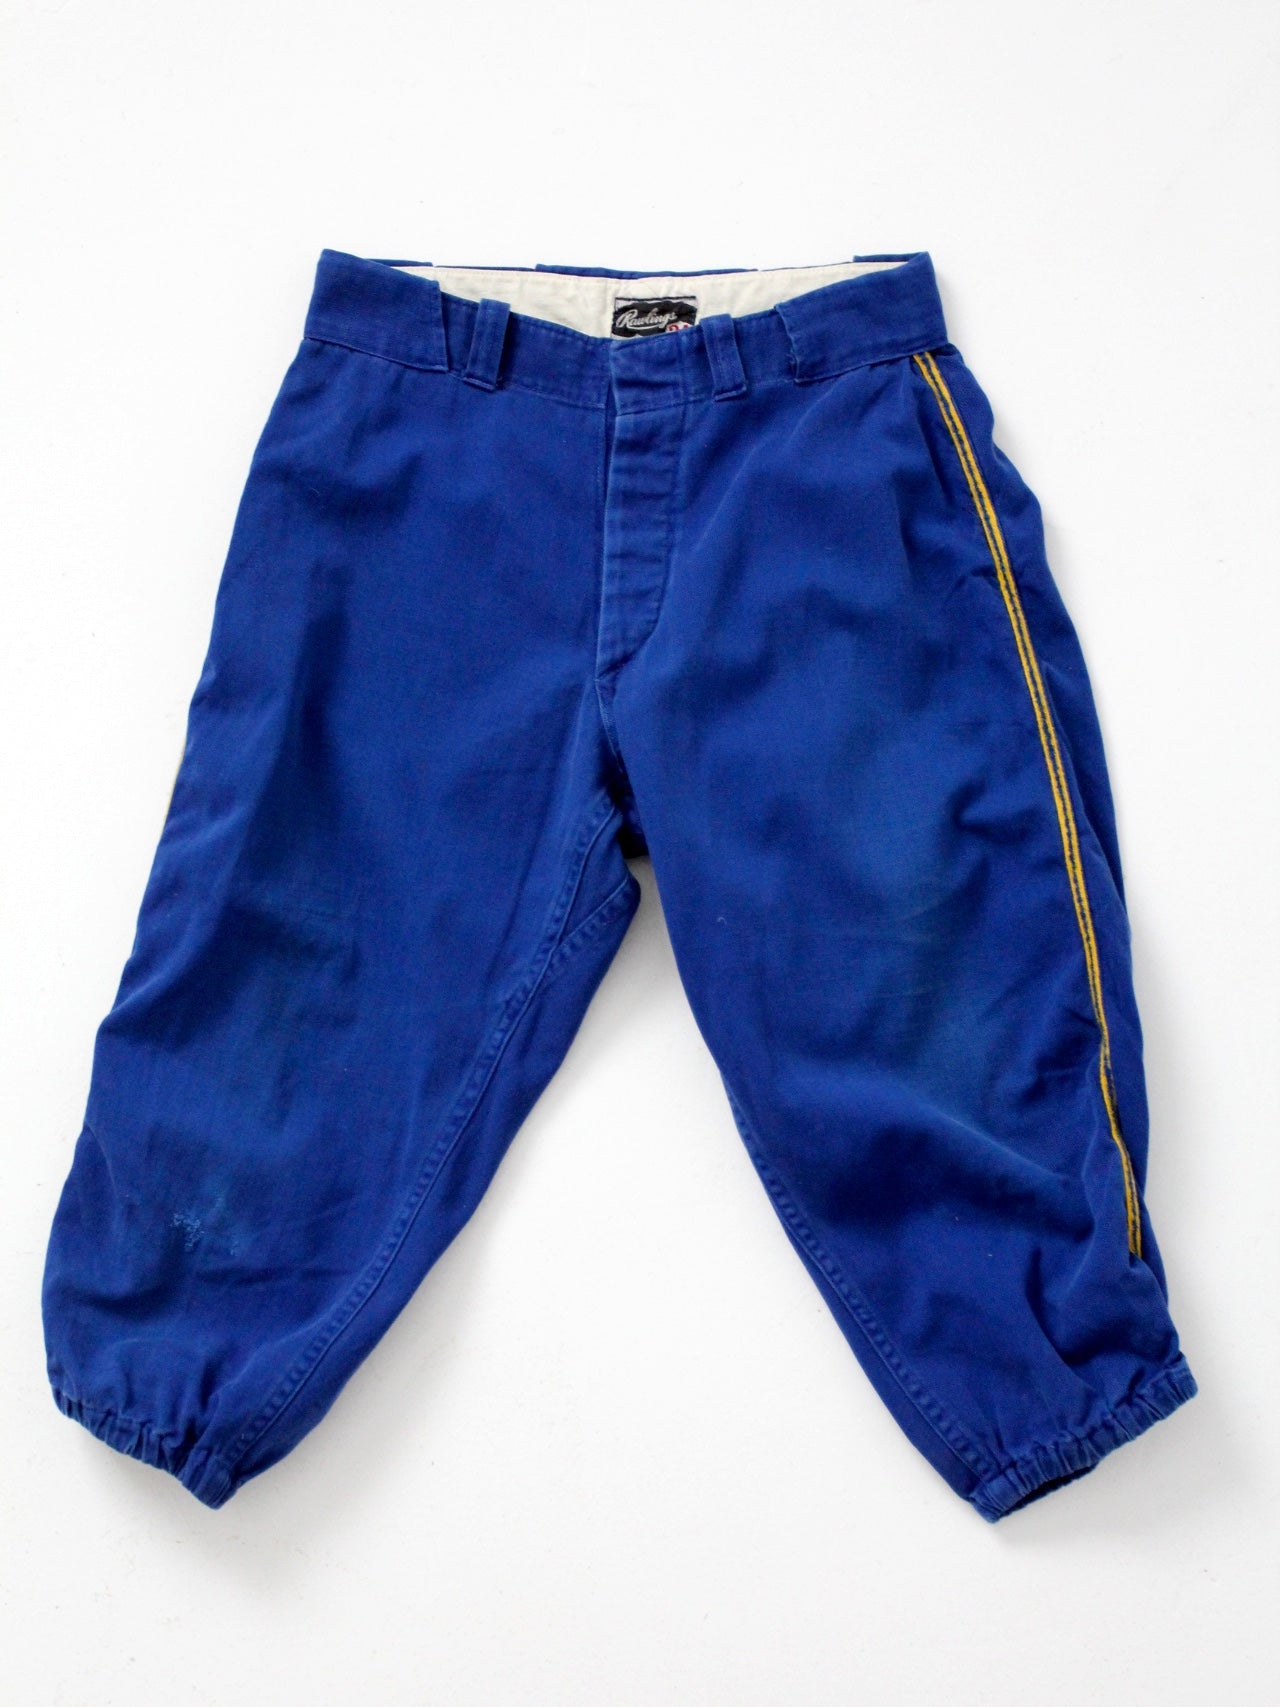 vintage Rawlings baseball uniform pants